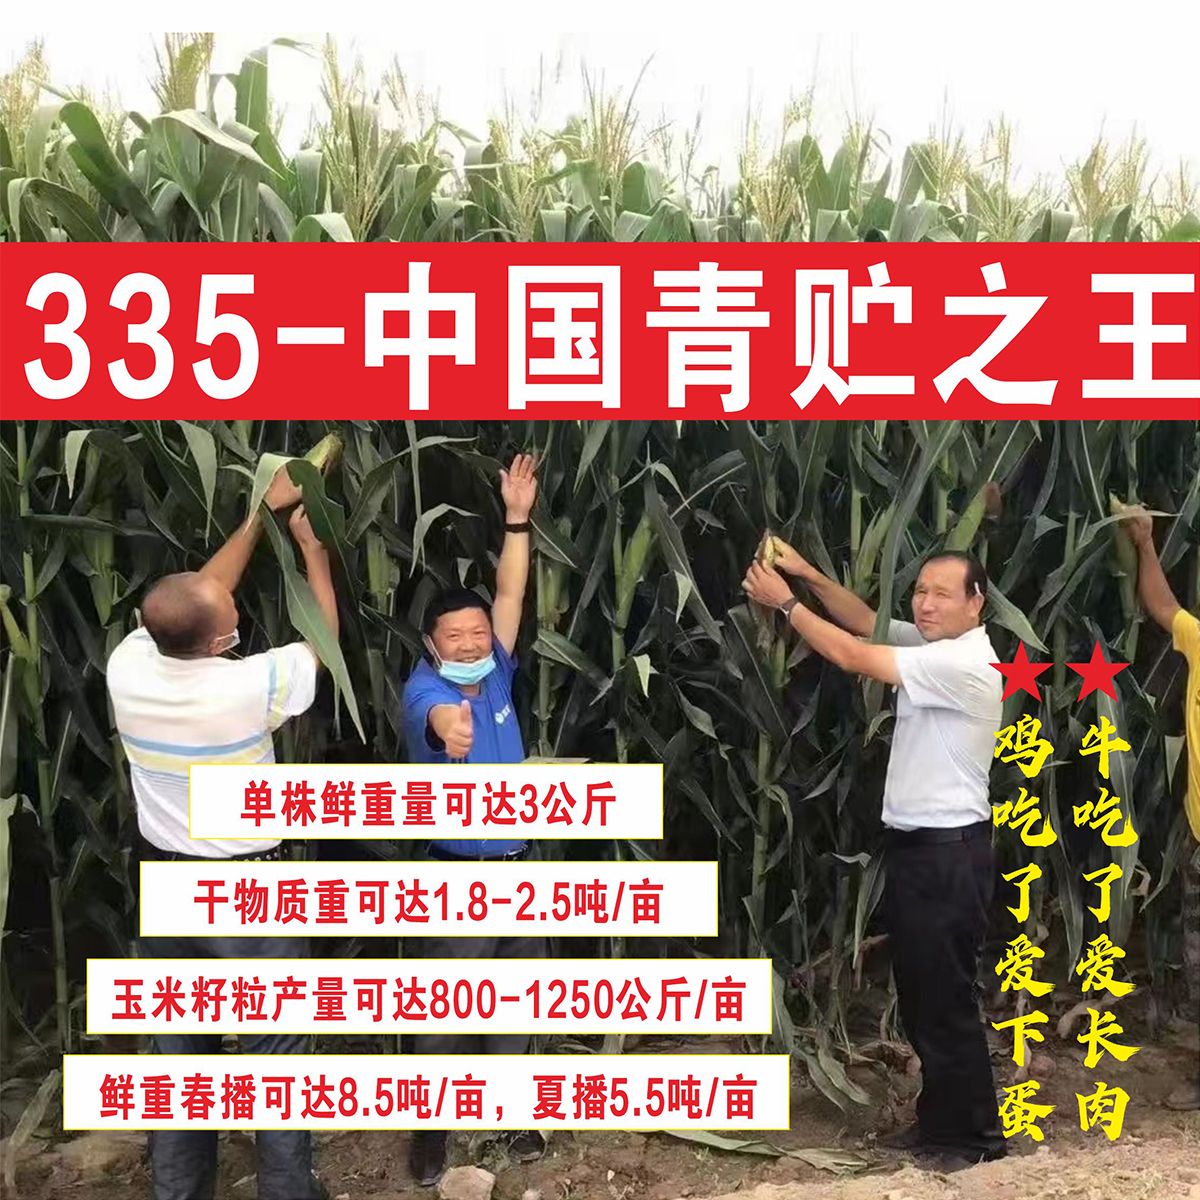 成都青储玉米种子营养好品质高生物产量达8500公斤青饲王335